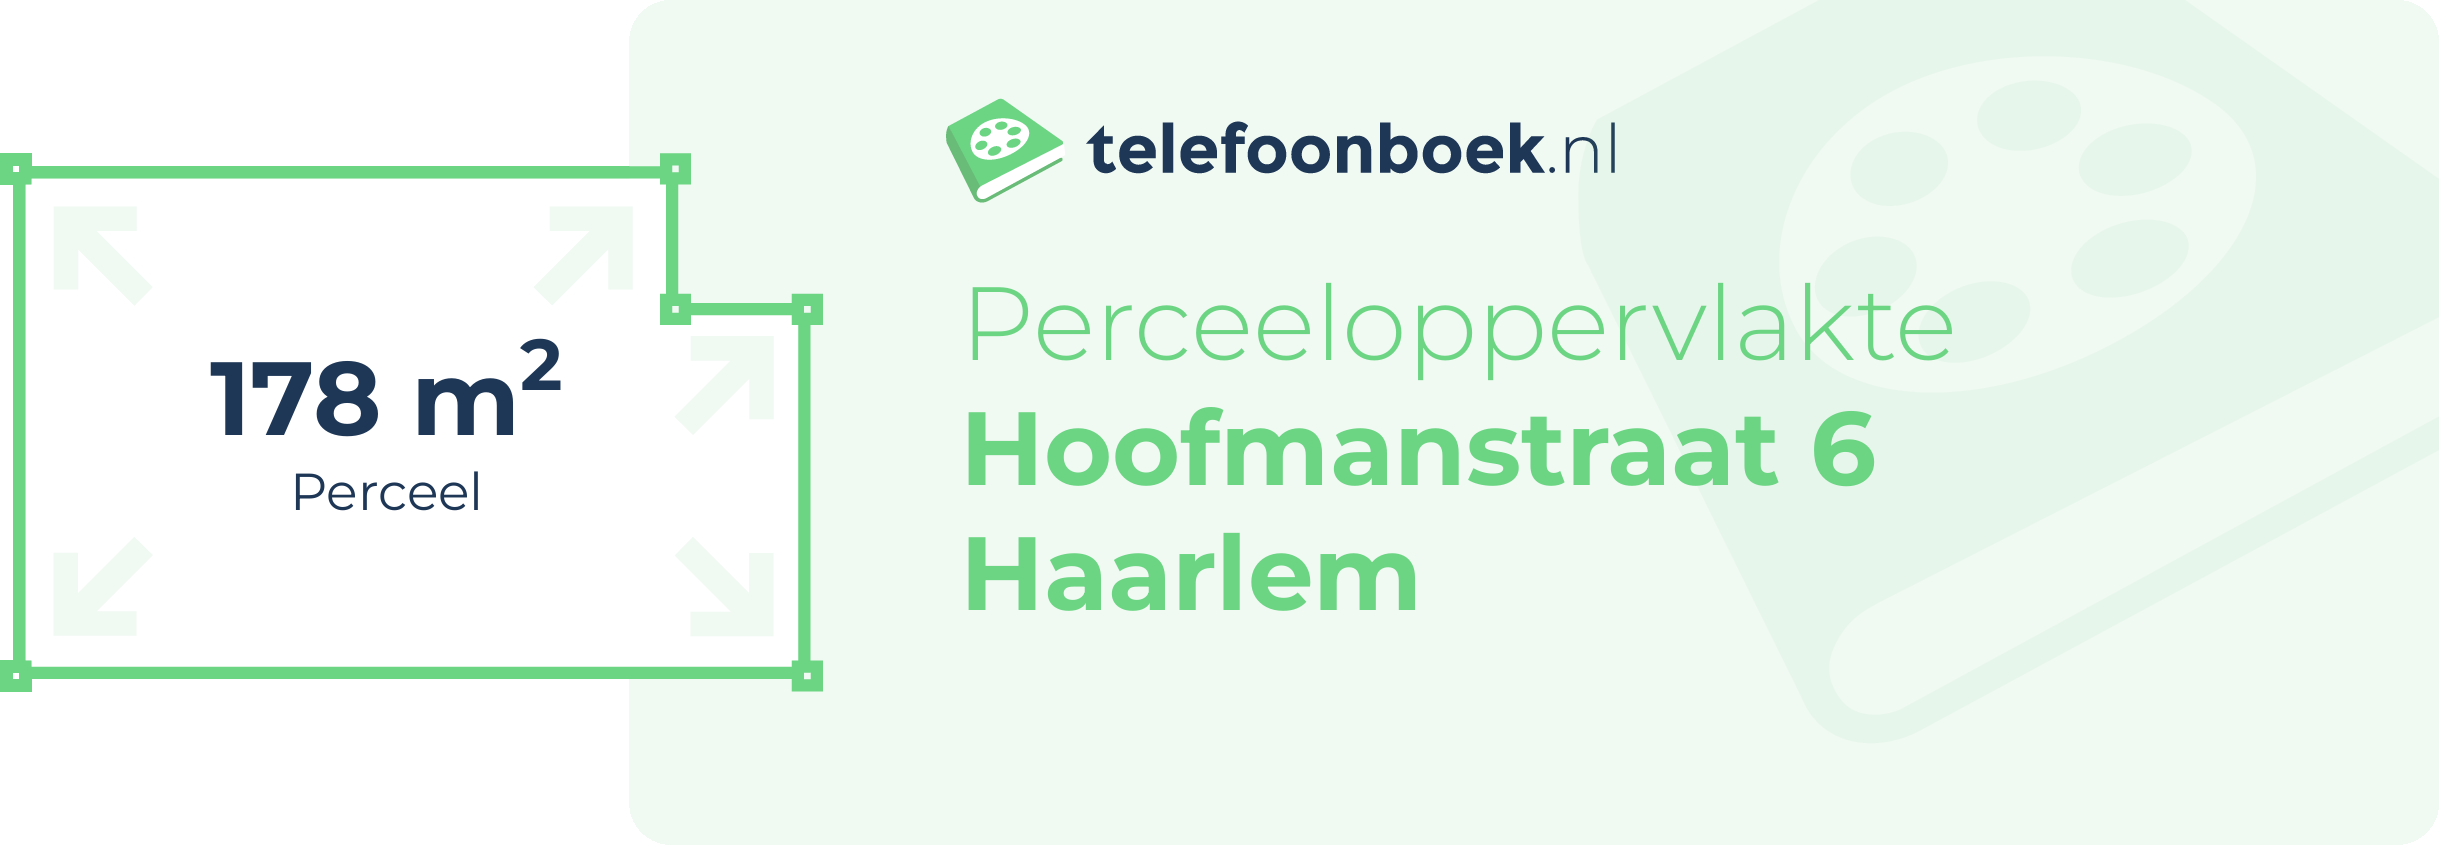 Perceeloppervlakte Hoofmanstraat 6 Haarlem